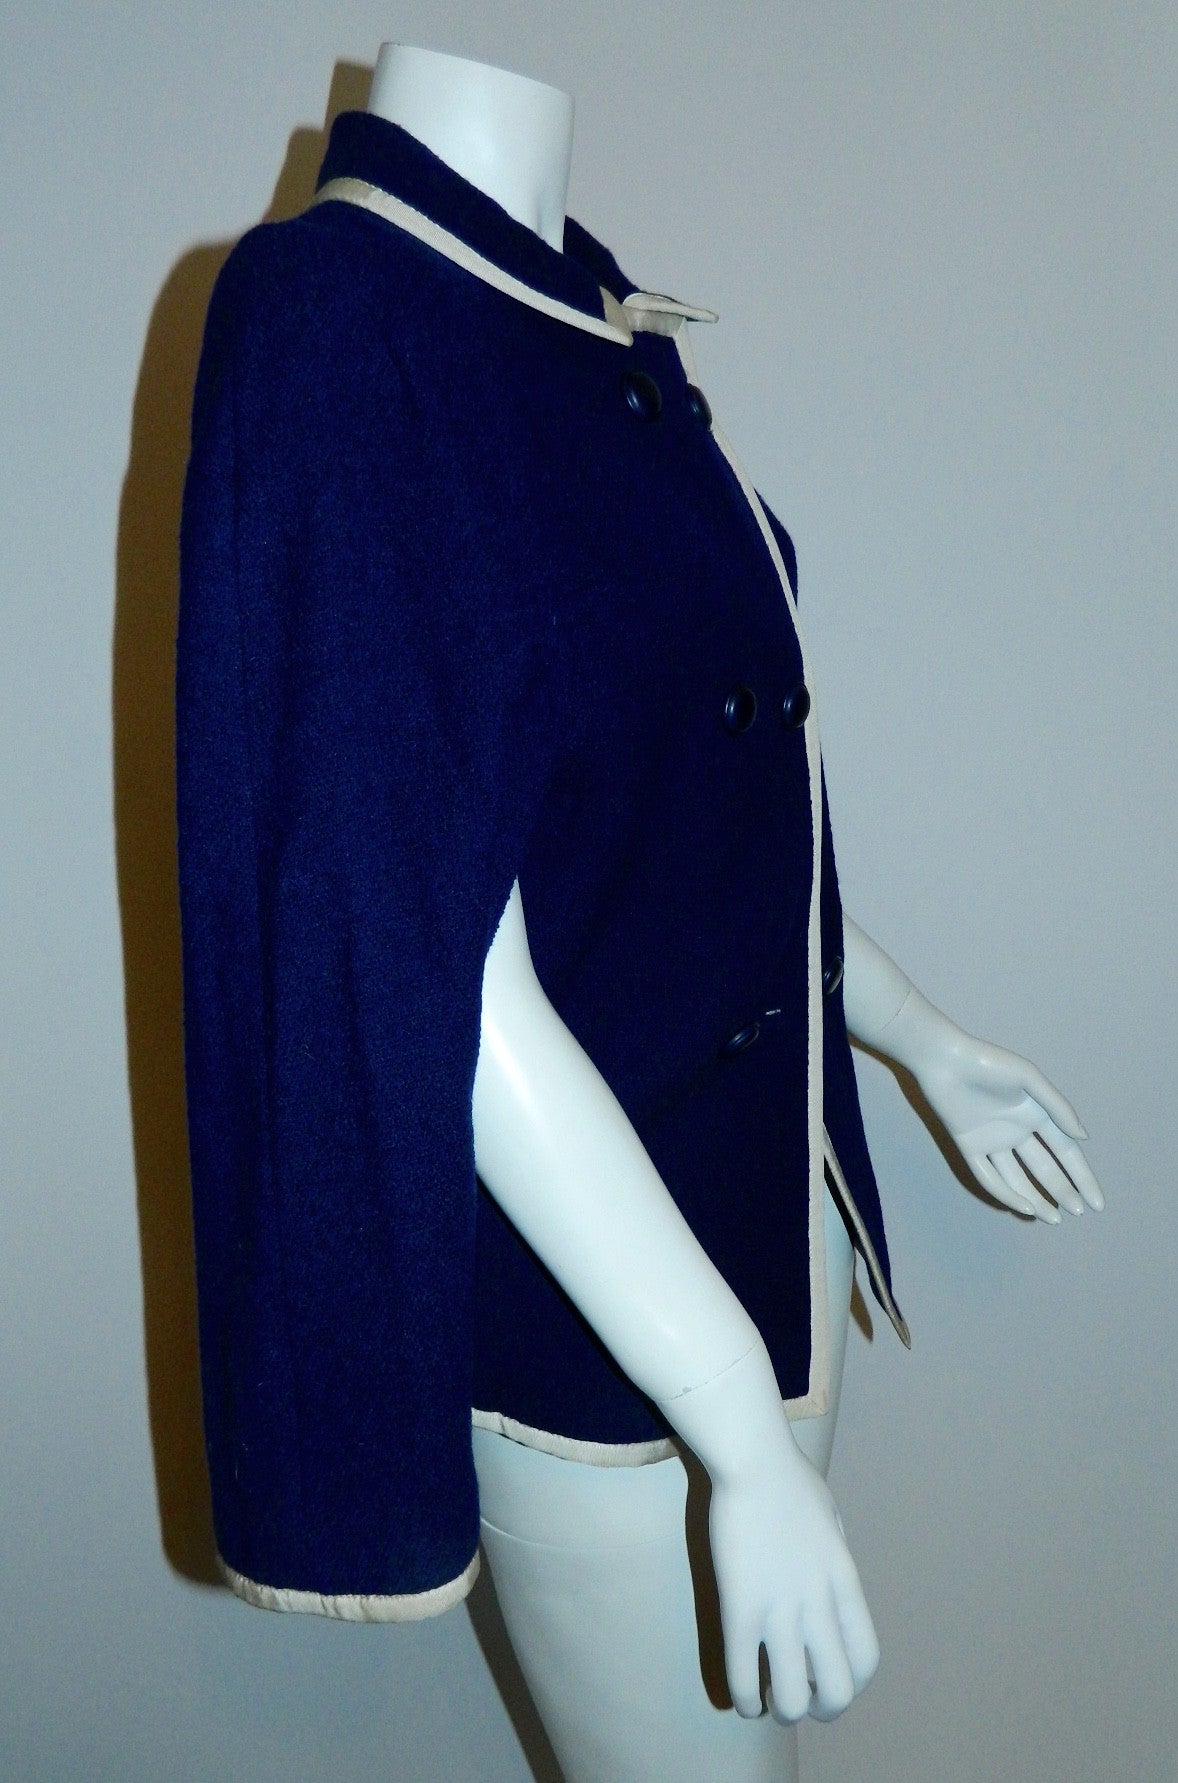 vintage 1960s blue wool cape / Handmacher navy boucle capelet jacket /white grosgrain trim